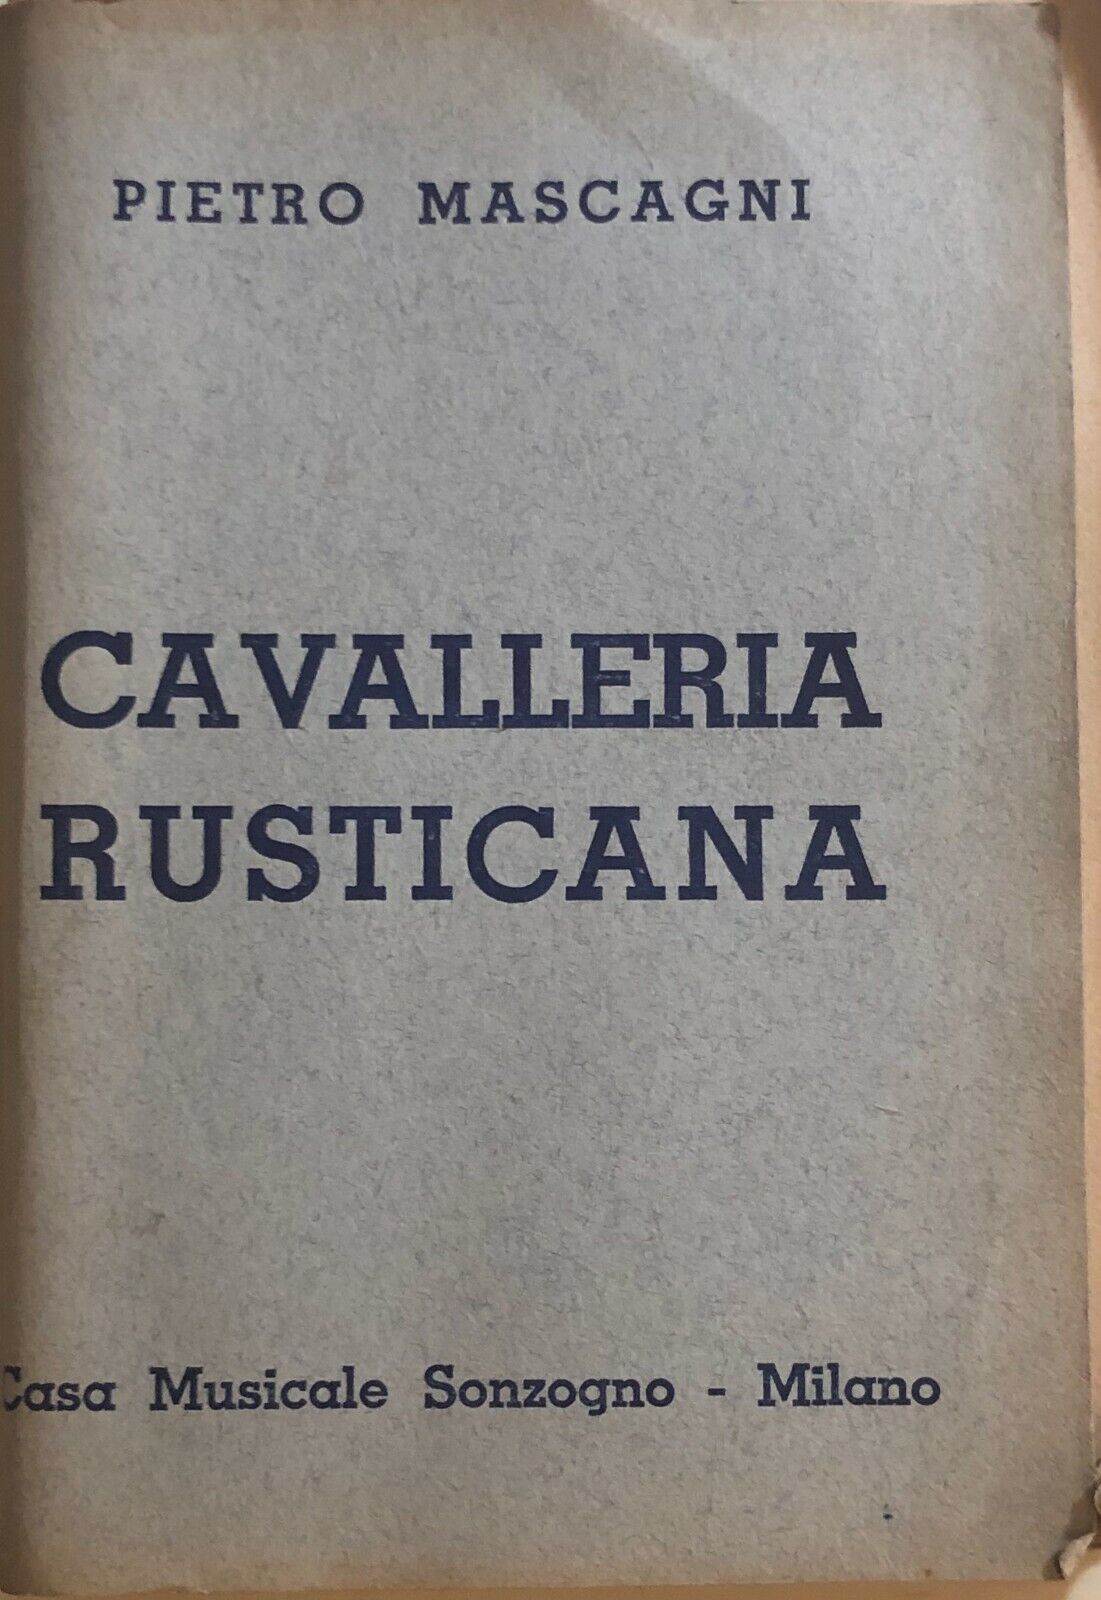 Cavalleria rusticana di Pietro Mascagni, 1937, Casa Musicale Sonzogno Milano